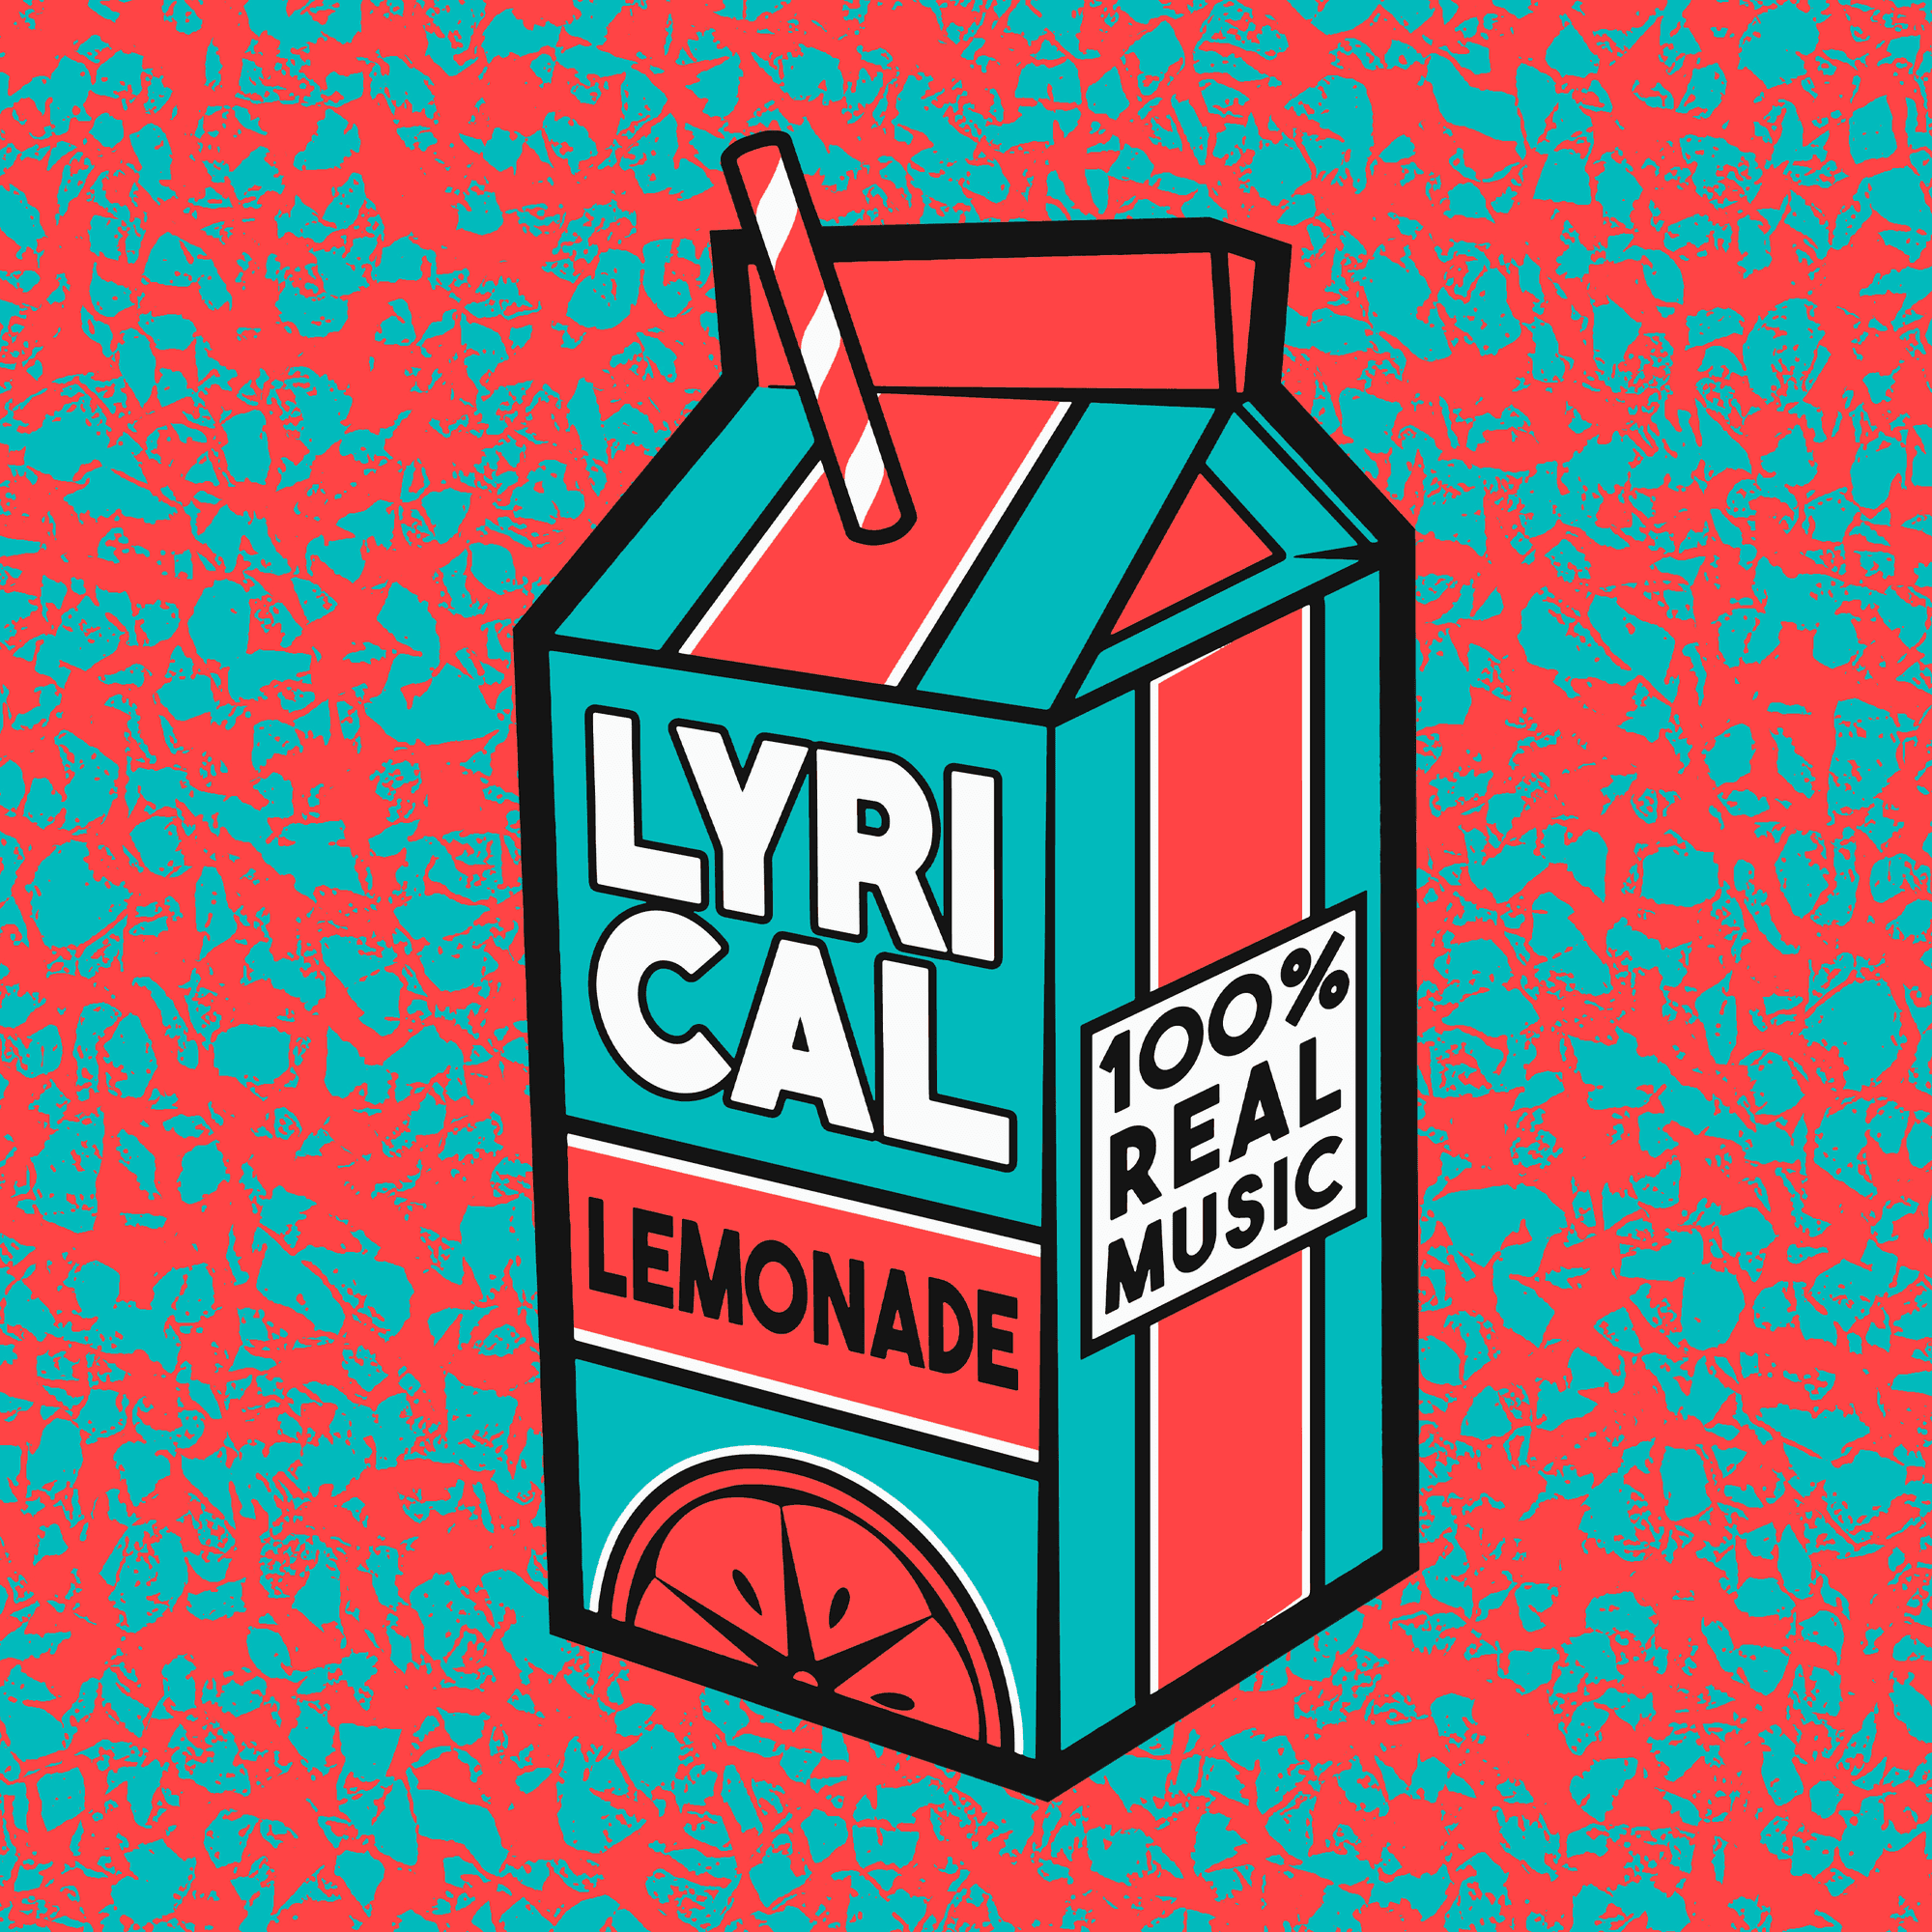 Lyrical Lemonade Carton #421 - The Carton | OpenSea